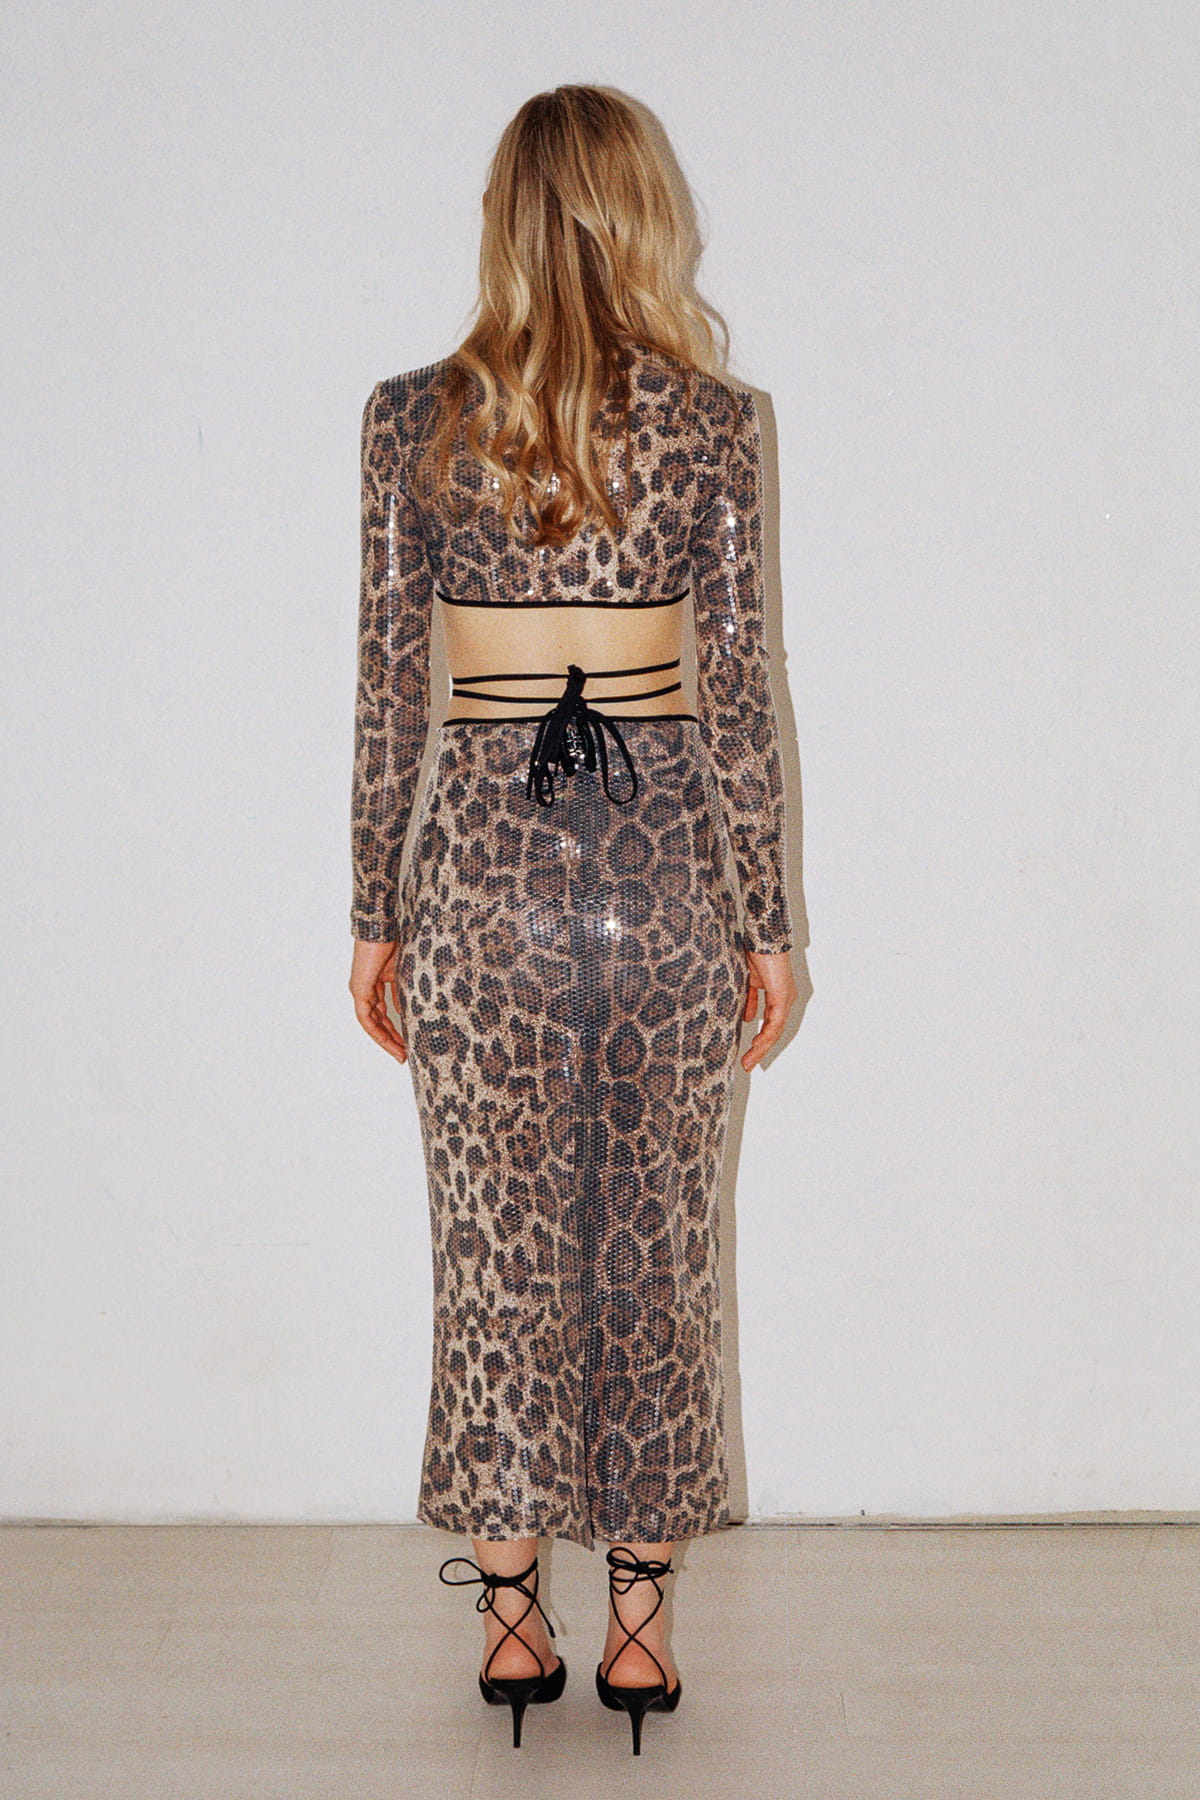 ANGELINE Leopard Patterned Sequin Skirt